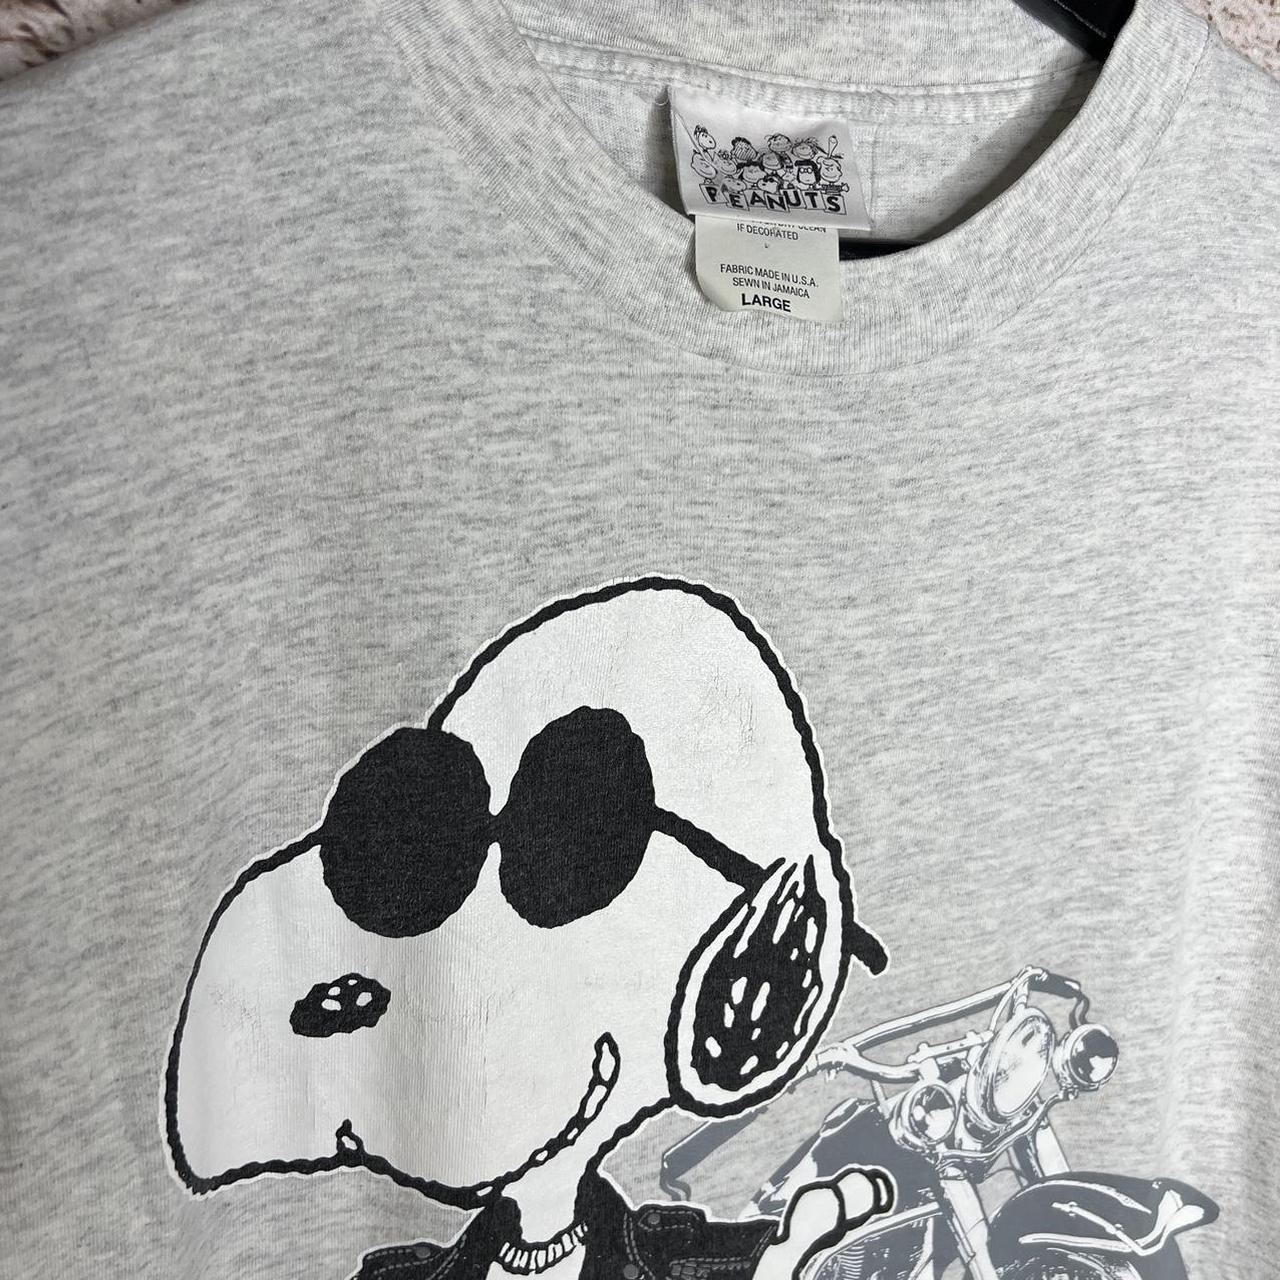 Vintage Joe Cool Motorcycle Snoopy Peanuts T Shirt... - Depop